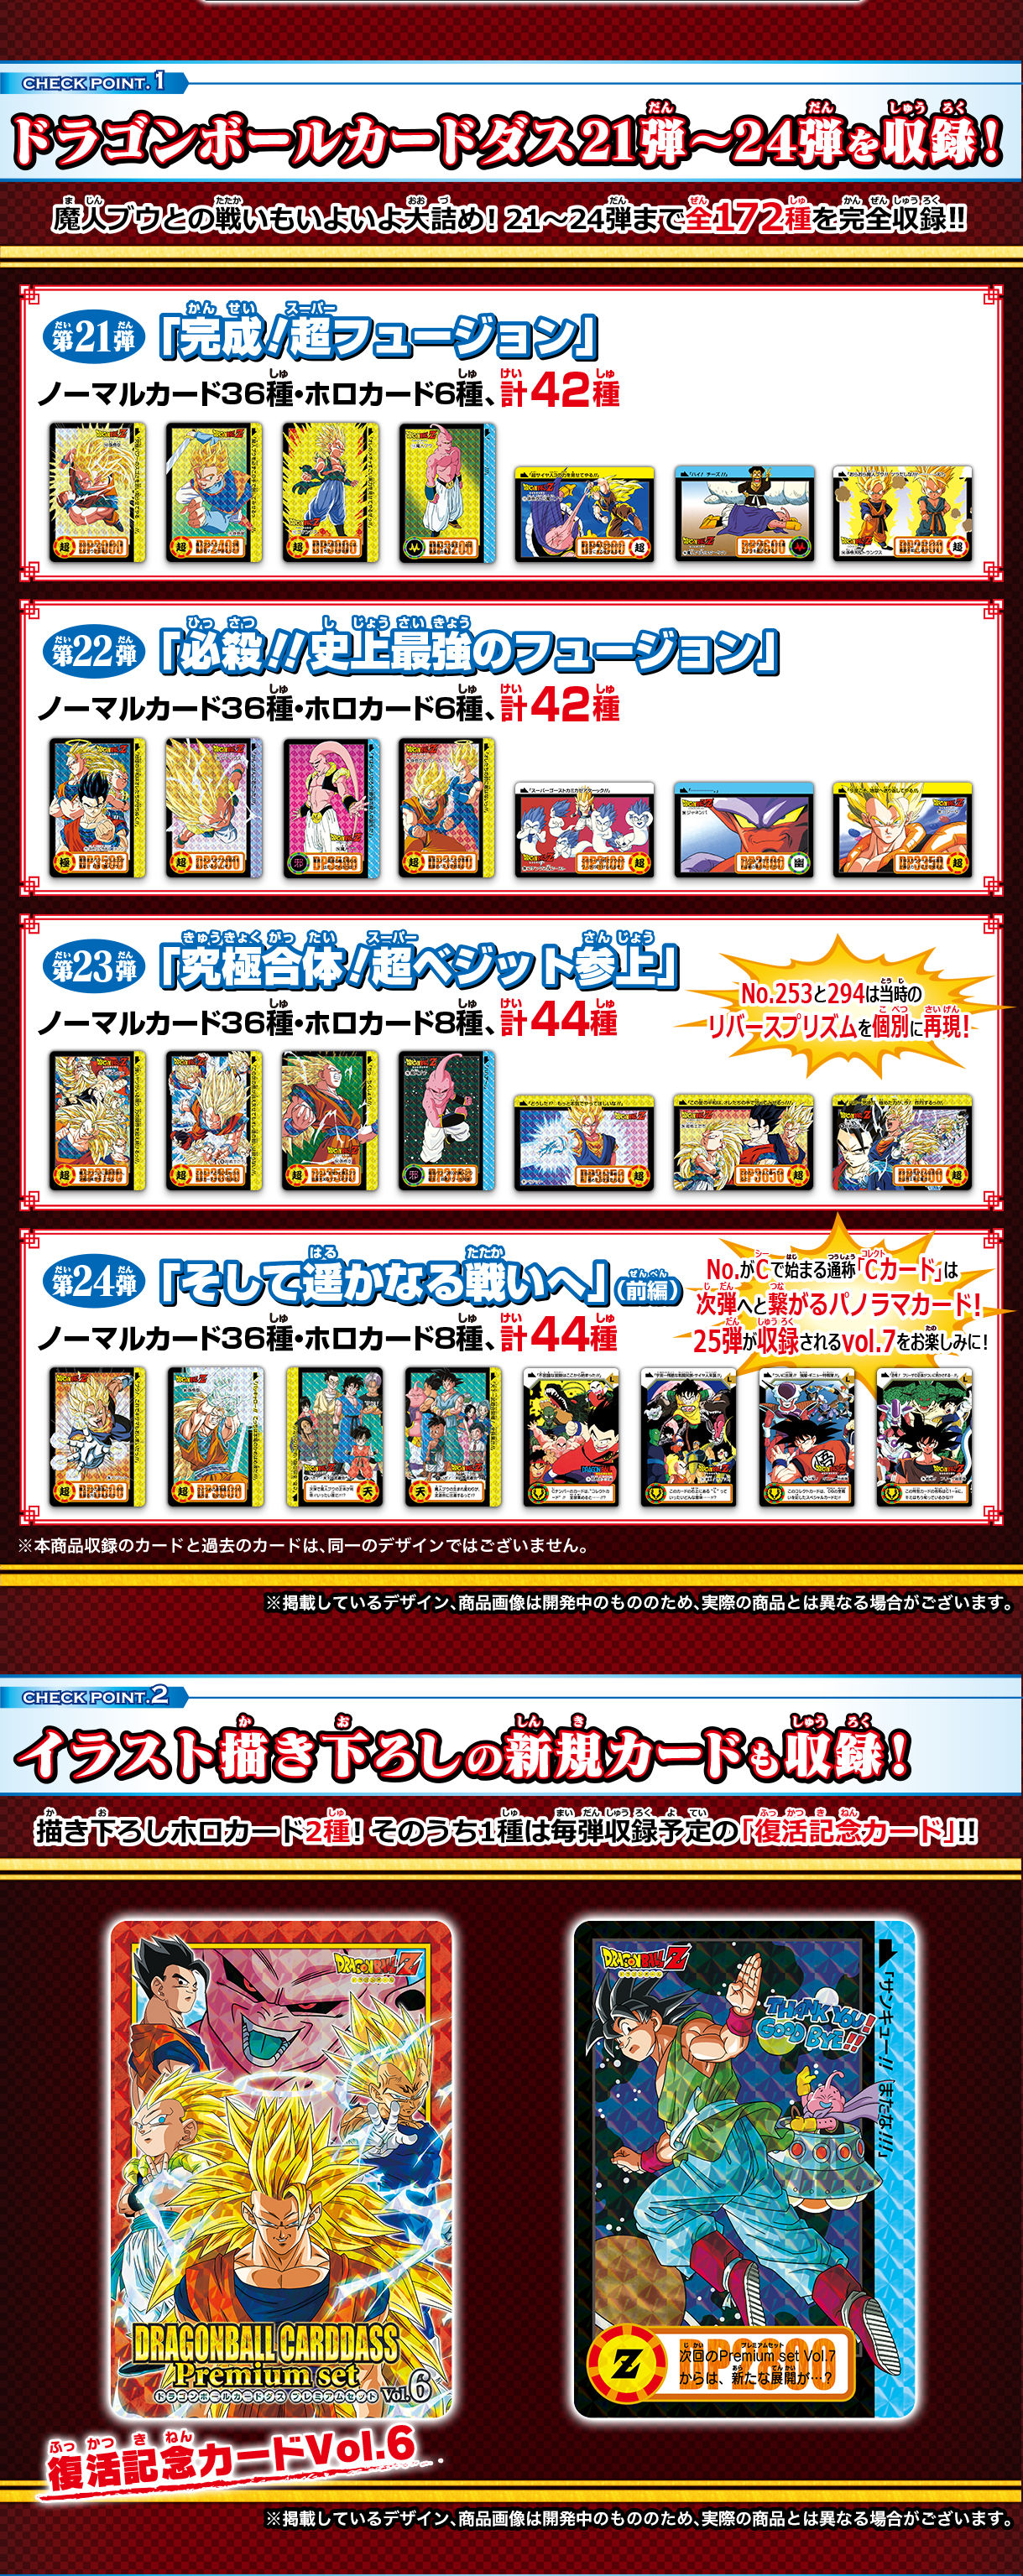 ドラゴンボール カードダス Premium set vol.6 プレミアムセット